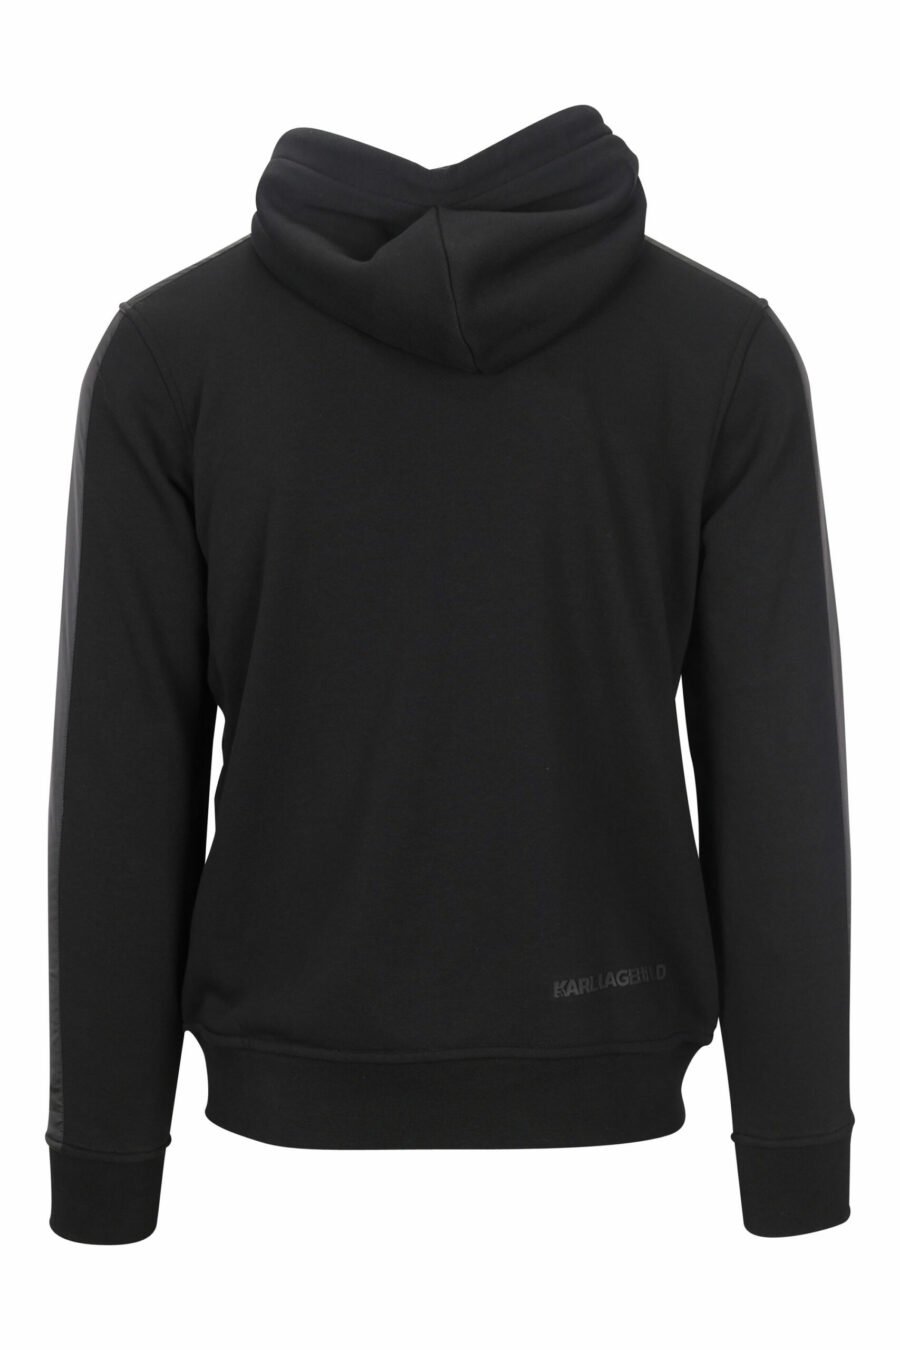 Schwarzes Kapuzensweatshirt mit Reißverschluss und Minilogue - 4062226650458 1 skaliert